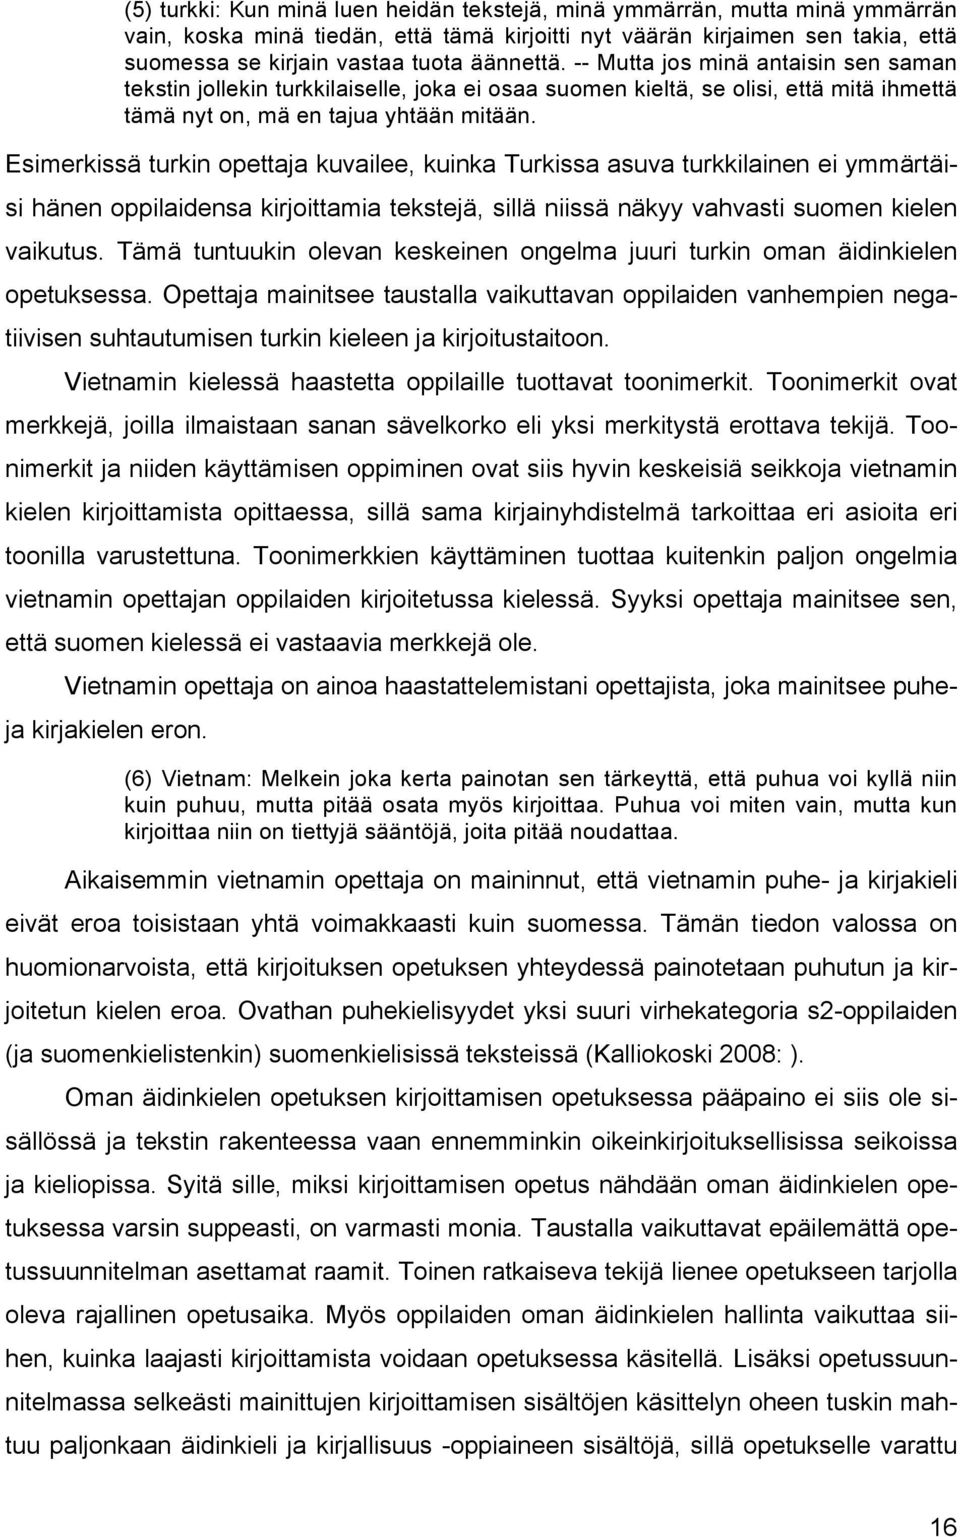 Esimerkissä turkin opettaja kuvailee, kuinka Turkissa asuva turkkilainen ei ymmärtäisi hänen oppilaidensa kirjoittamia tekstejä, sillä niissä näkyy vahvasti suomen kielen vaikutus.